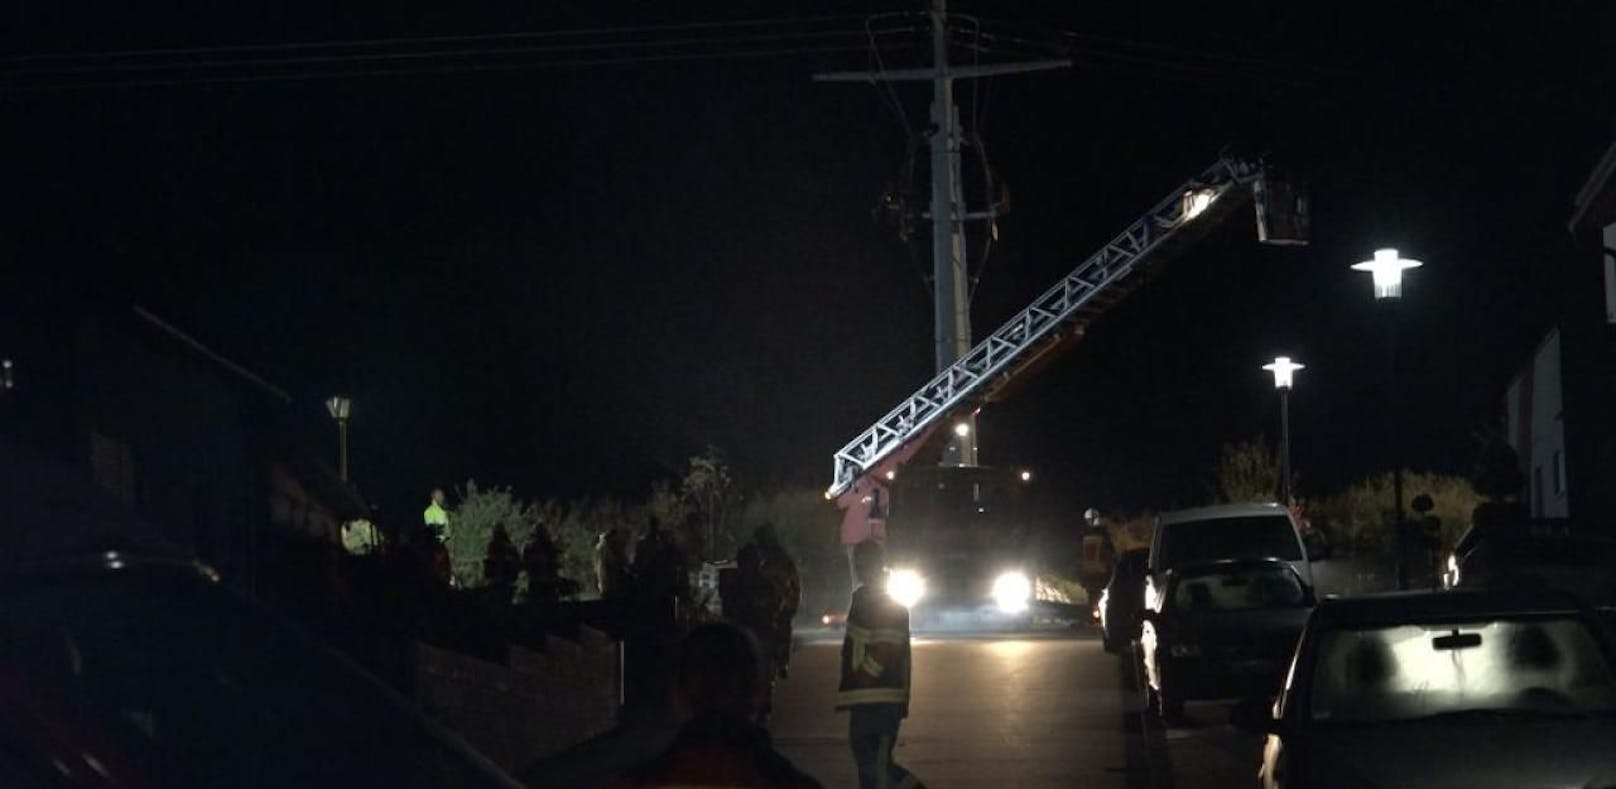 Der 25-Jährige kletterte auf einen Masten und wurde von einem Stromschlag getroffen